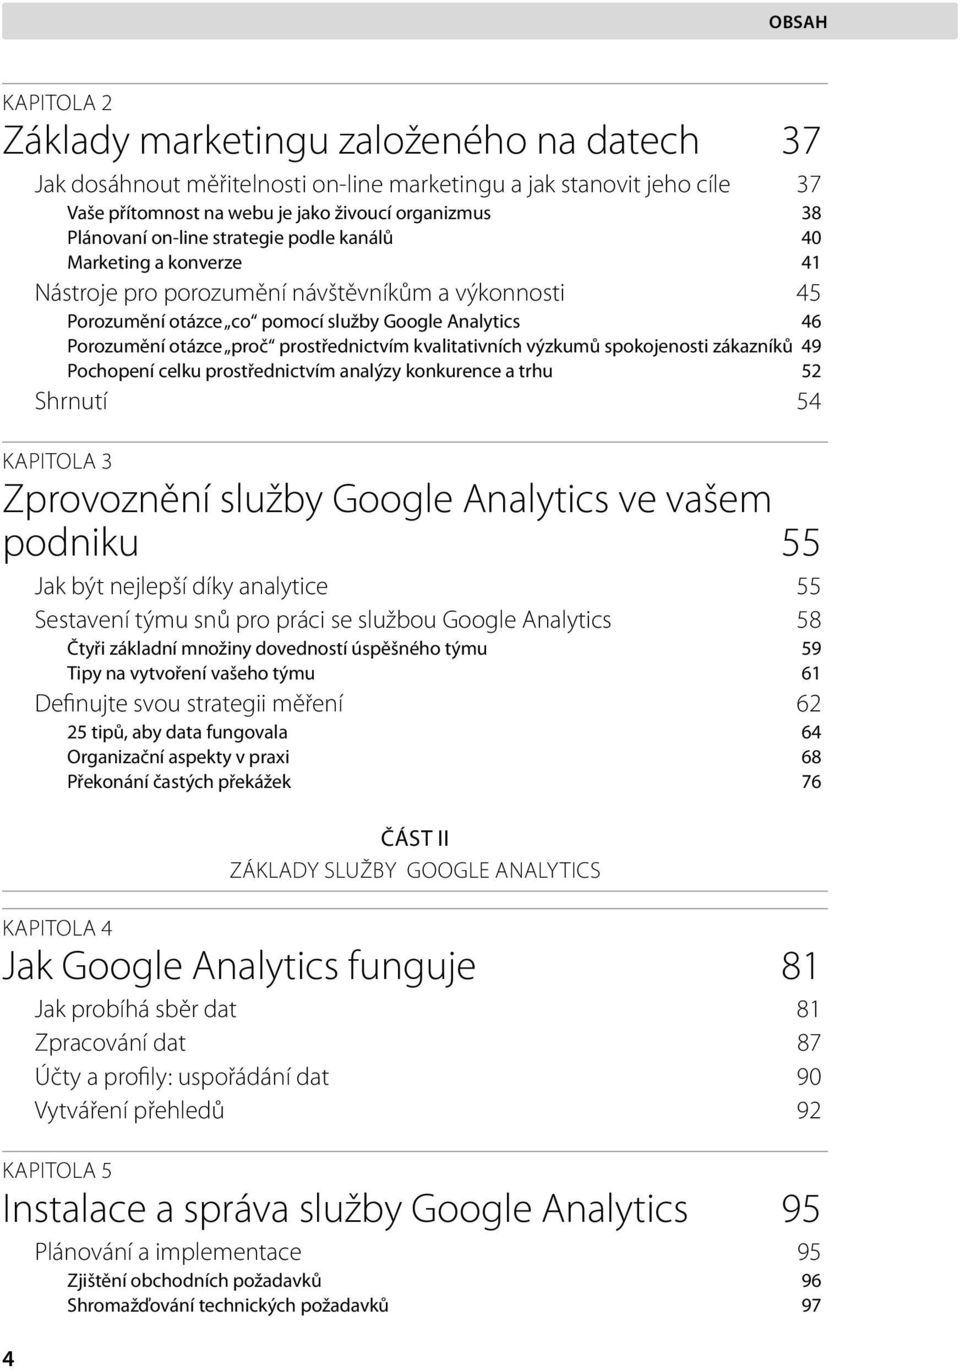 prostřednictvím kvalitativních výzkumů spokojenosti zákazníků 49 Pochopení celku prostřednictvím analýzy konkurence a trhu 52 Shrnutí 54 KAPITOLA 3 Zprovoznění služby Google Analytics ve vašem